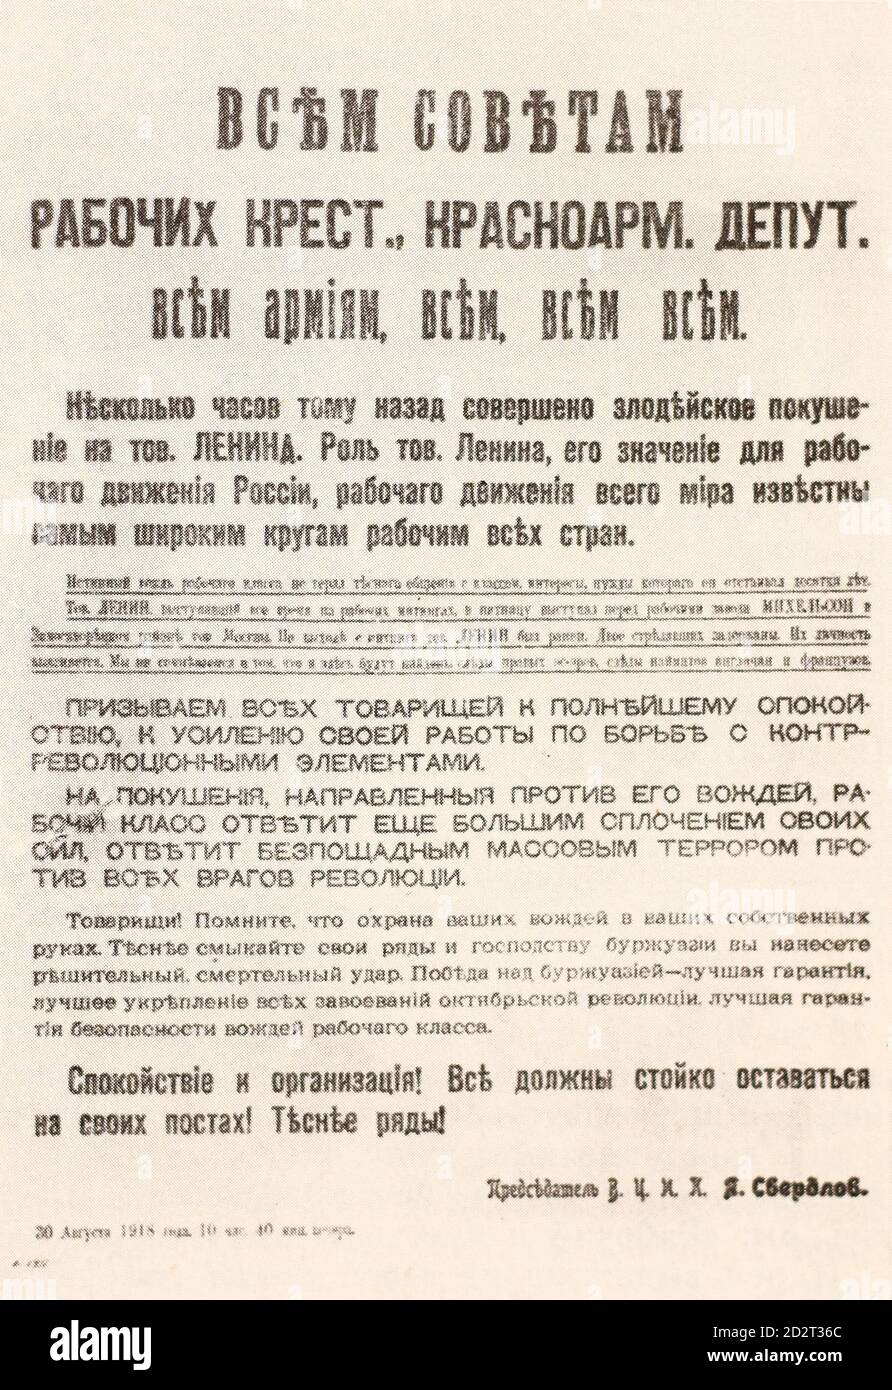 Appello del Comitato Esecutivo Centrale interamente russo in relazione al tentativo di vita di Vladimir Lenin. Foto Stock